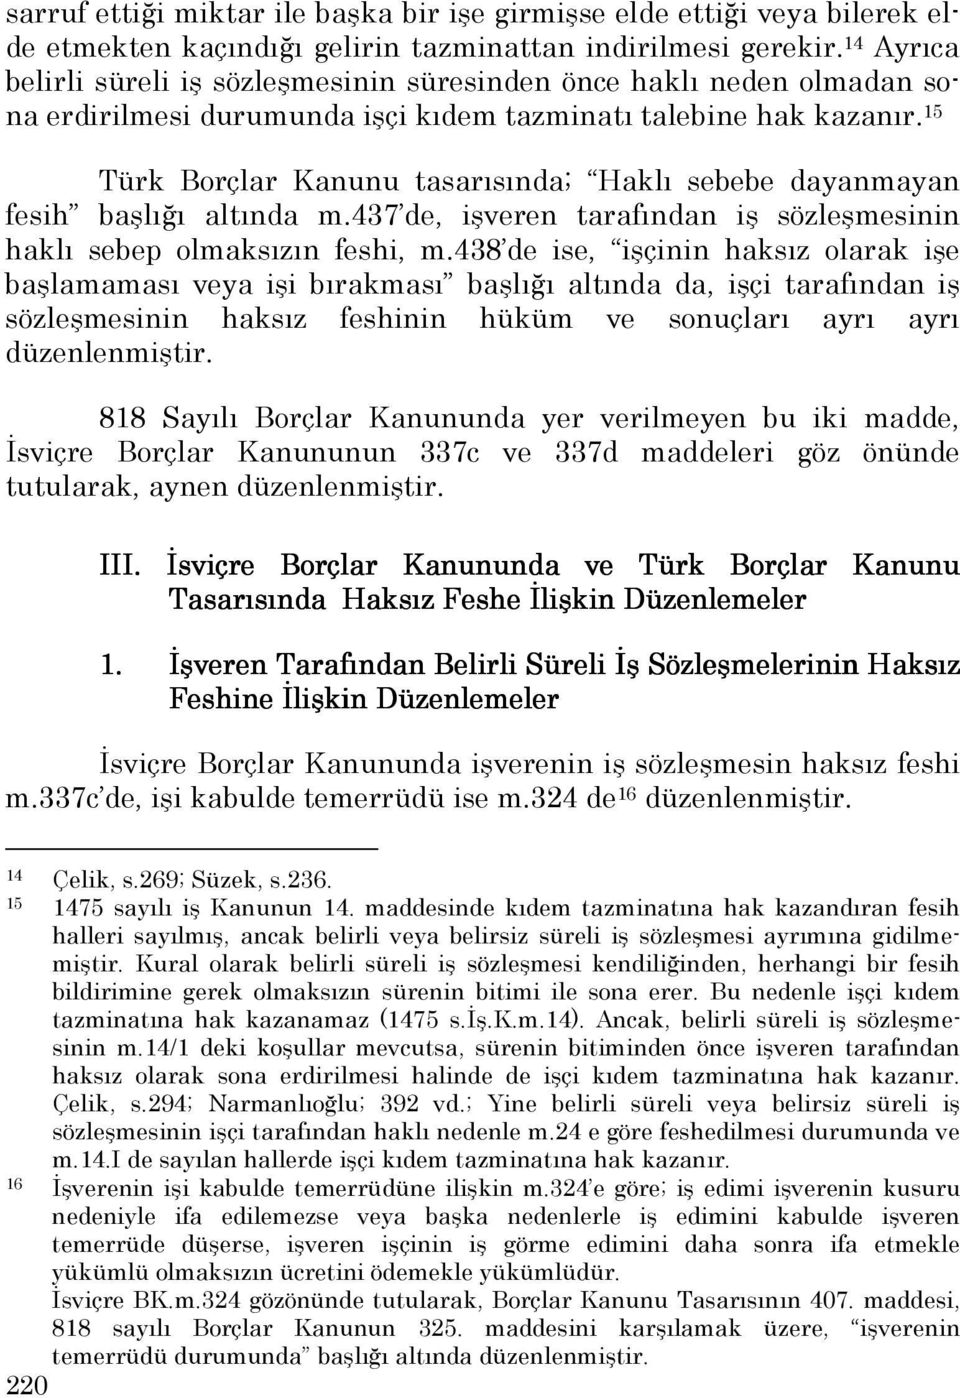 15 Türk Borçlar Kanunu tasarısında; Haklı sebebe dayanmayan fesih başlığı altında m.437 de, işveren tarafından iş sözleşmesinin haklı sebep olmaksızın feshi, m.